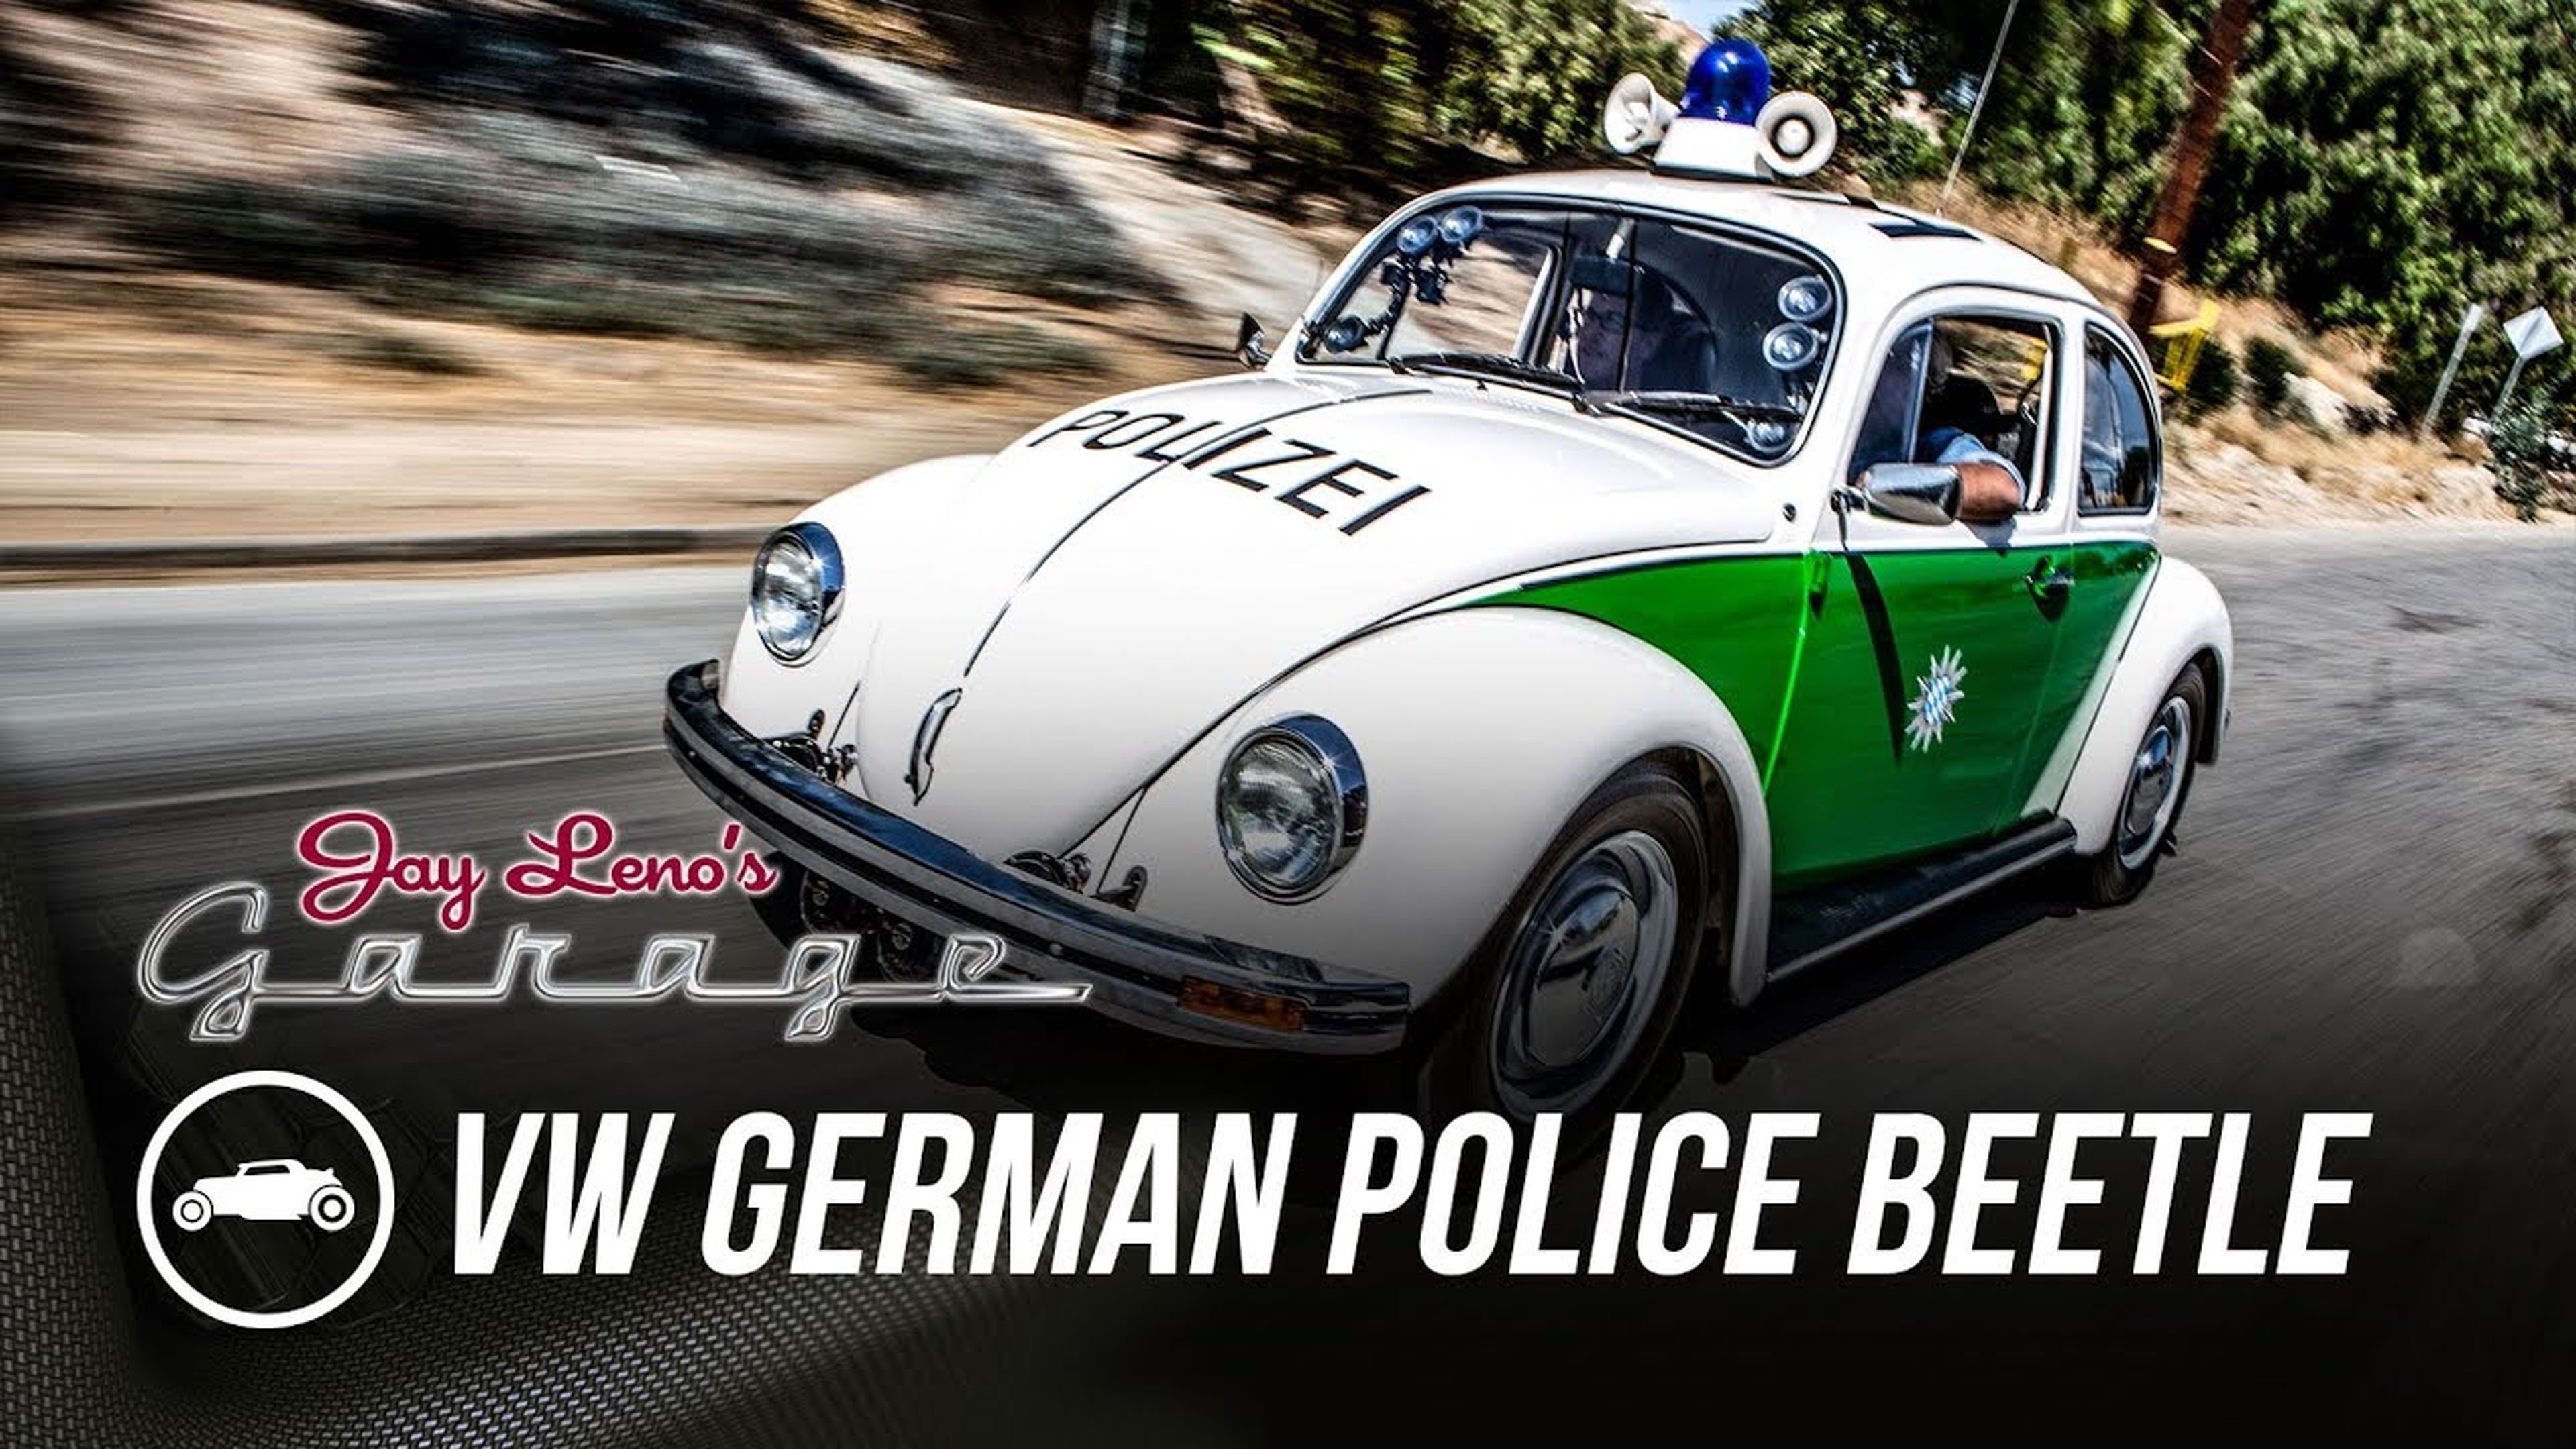 VW Beetle de la policía alemana